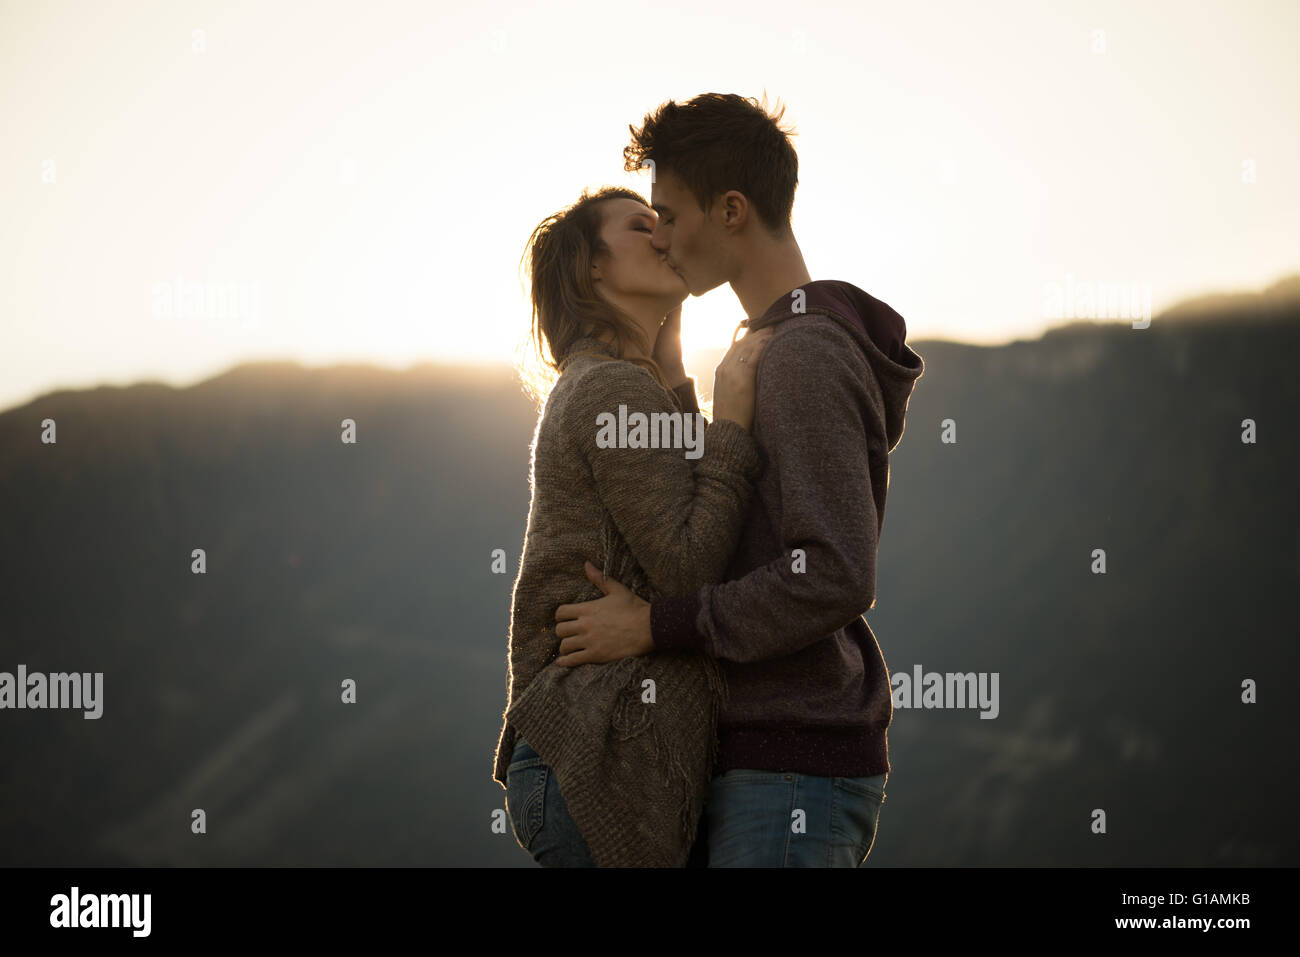 Romántico joven pareja besándose apasionadamente durante la puesta de sol, las montañas de fondo, sentimientos y relaciones concepto Foto de stock